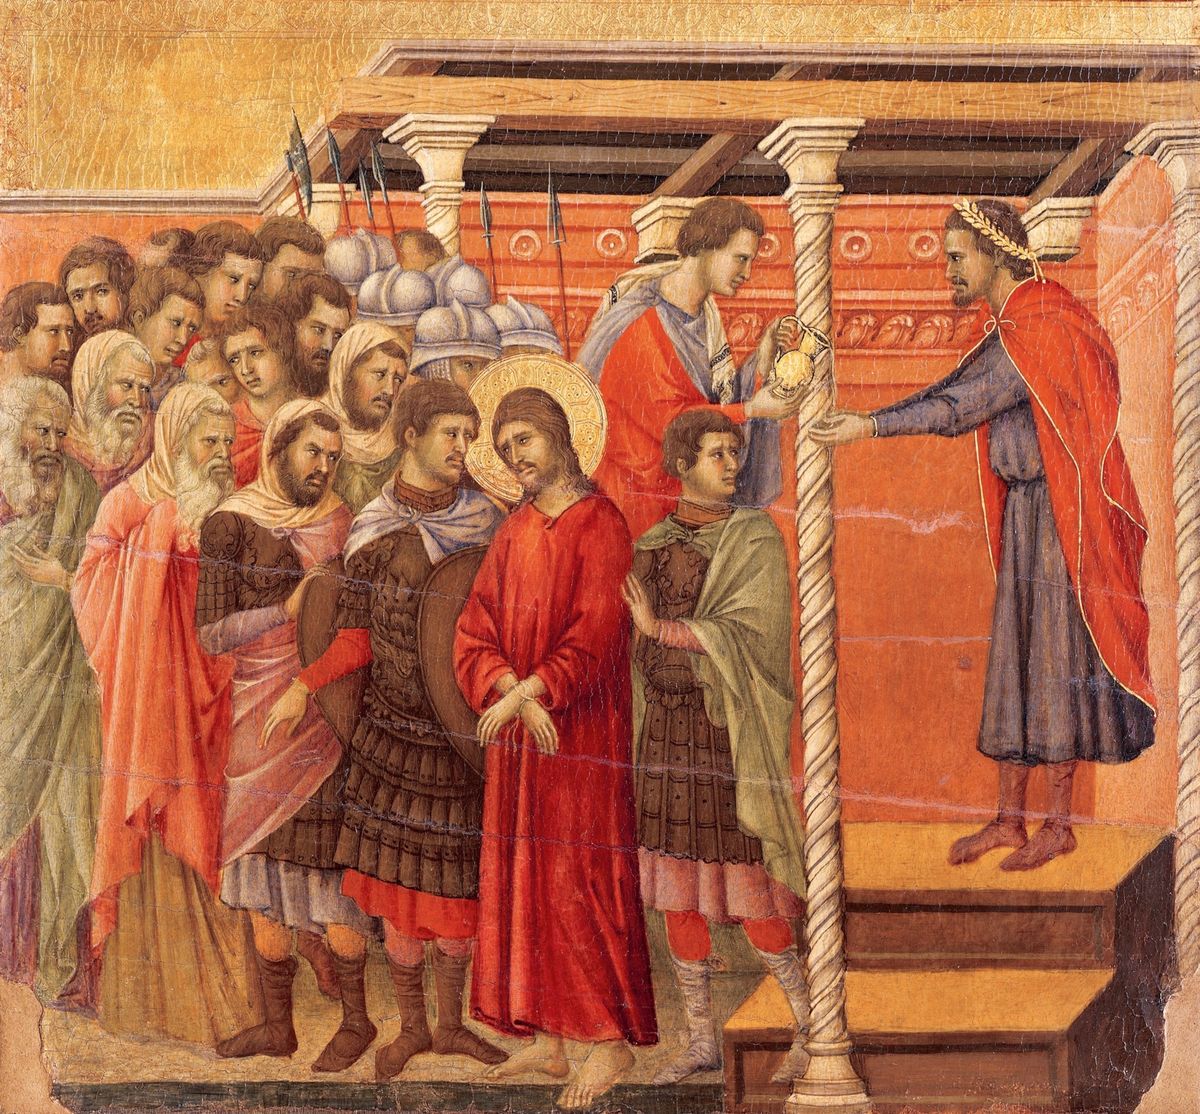 Het wassen van de handen was een belangrijk sociaal ritueel in de middeleeuwen en werd ook afgebeeld in middeleeuwse kunst Op dit veertiendeeeuwse altaarstuk uit de kathedraal van Siena wast Pontius Pilatus zijn handen wanneer hij Jezus Christus veroordeelt